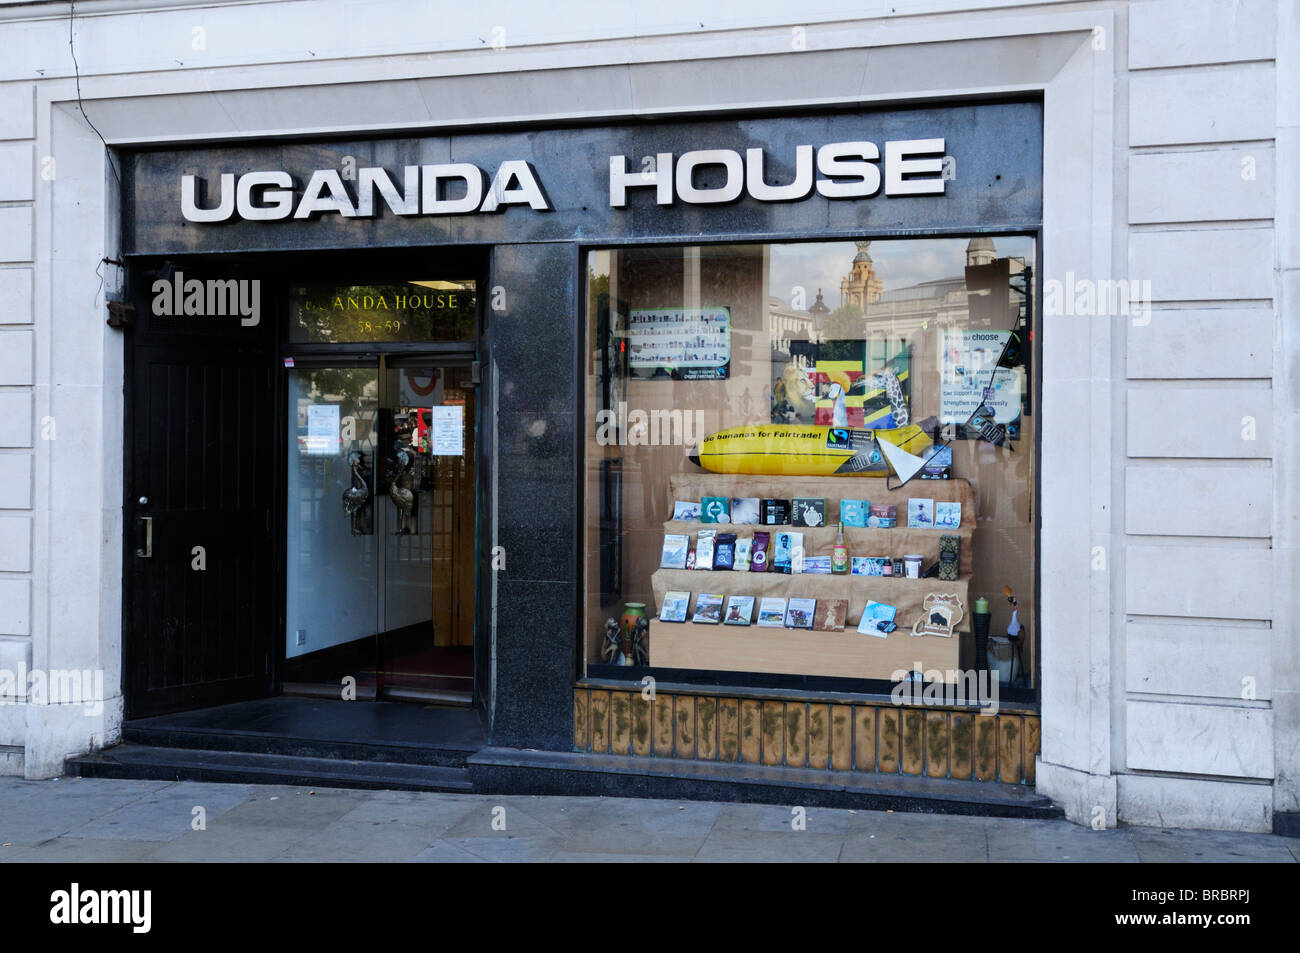 Uganda House, Uganda High Commission, Trafalgar Square, London, England, UK Stock Photo